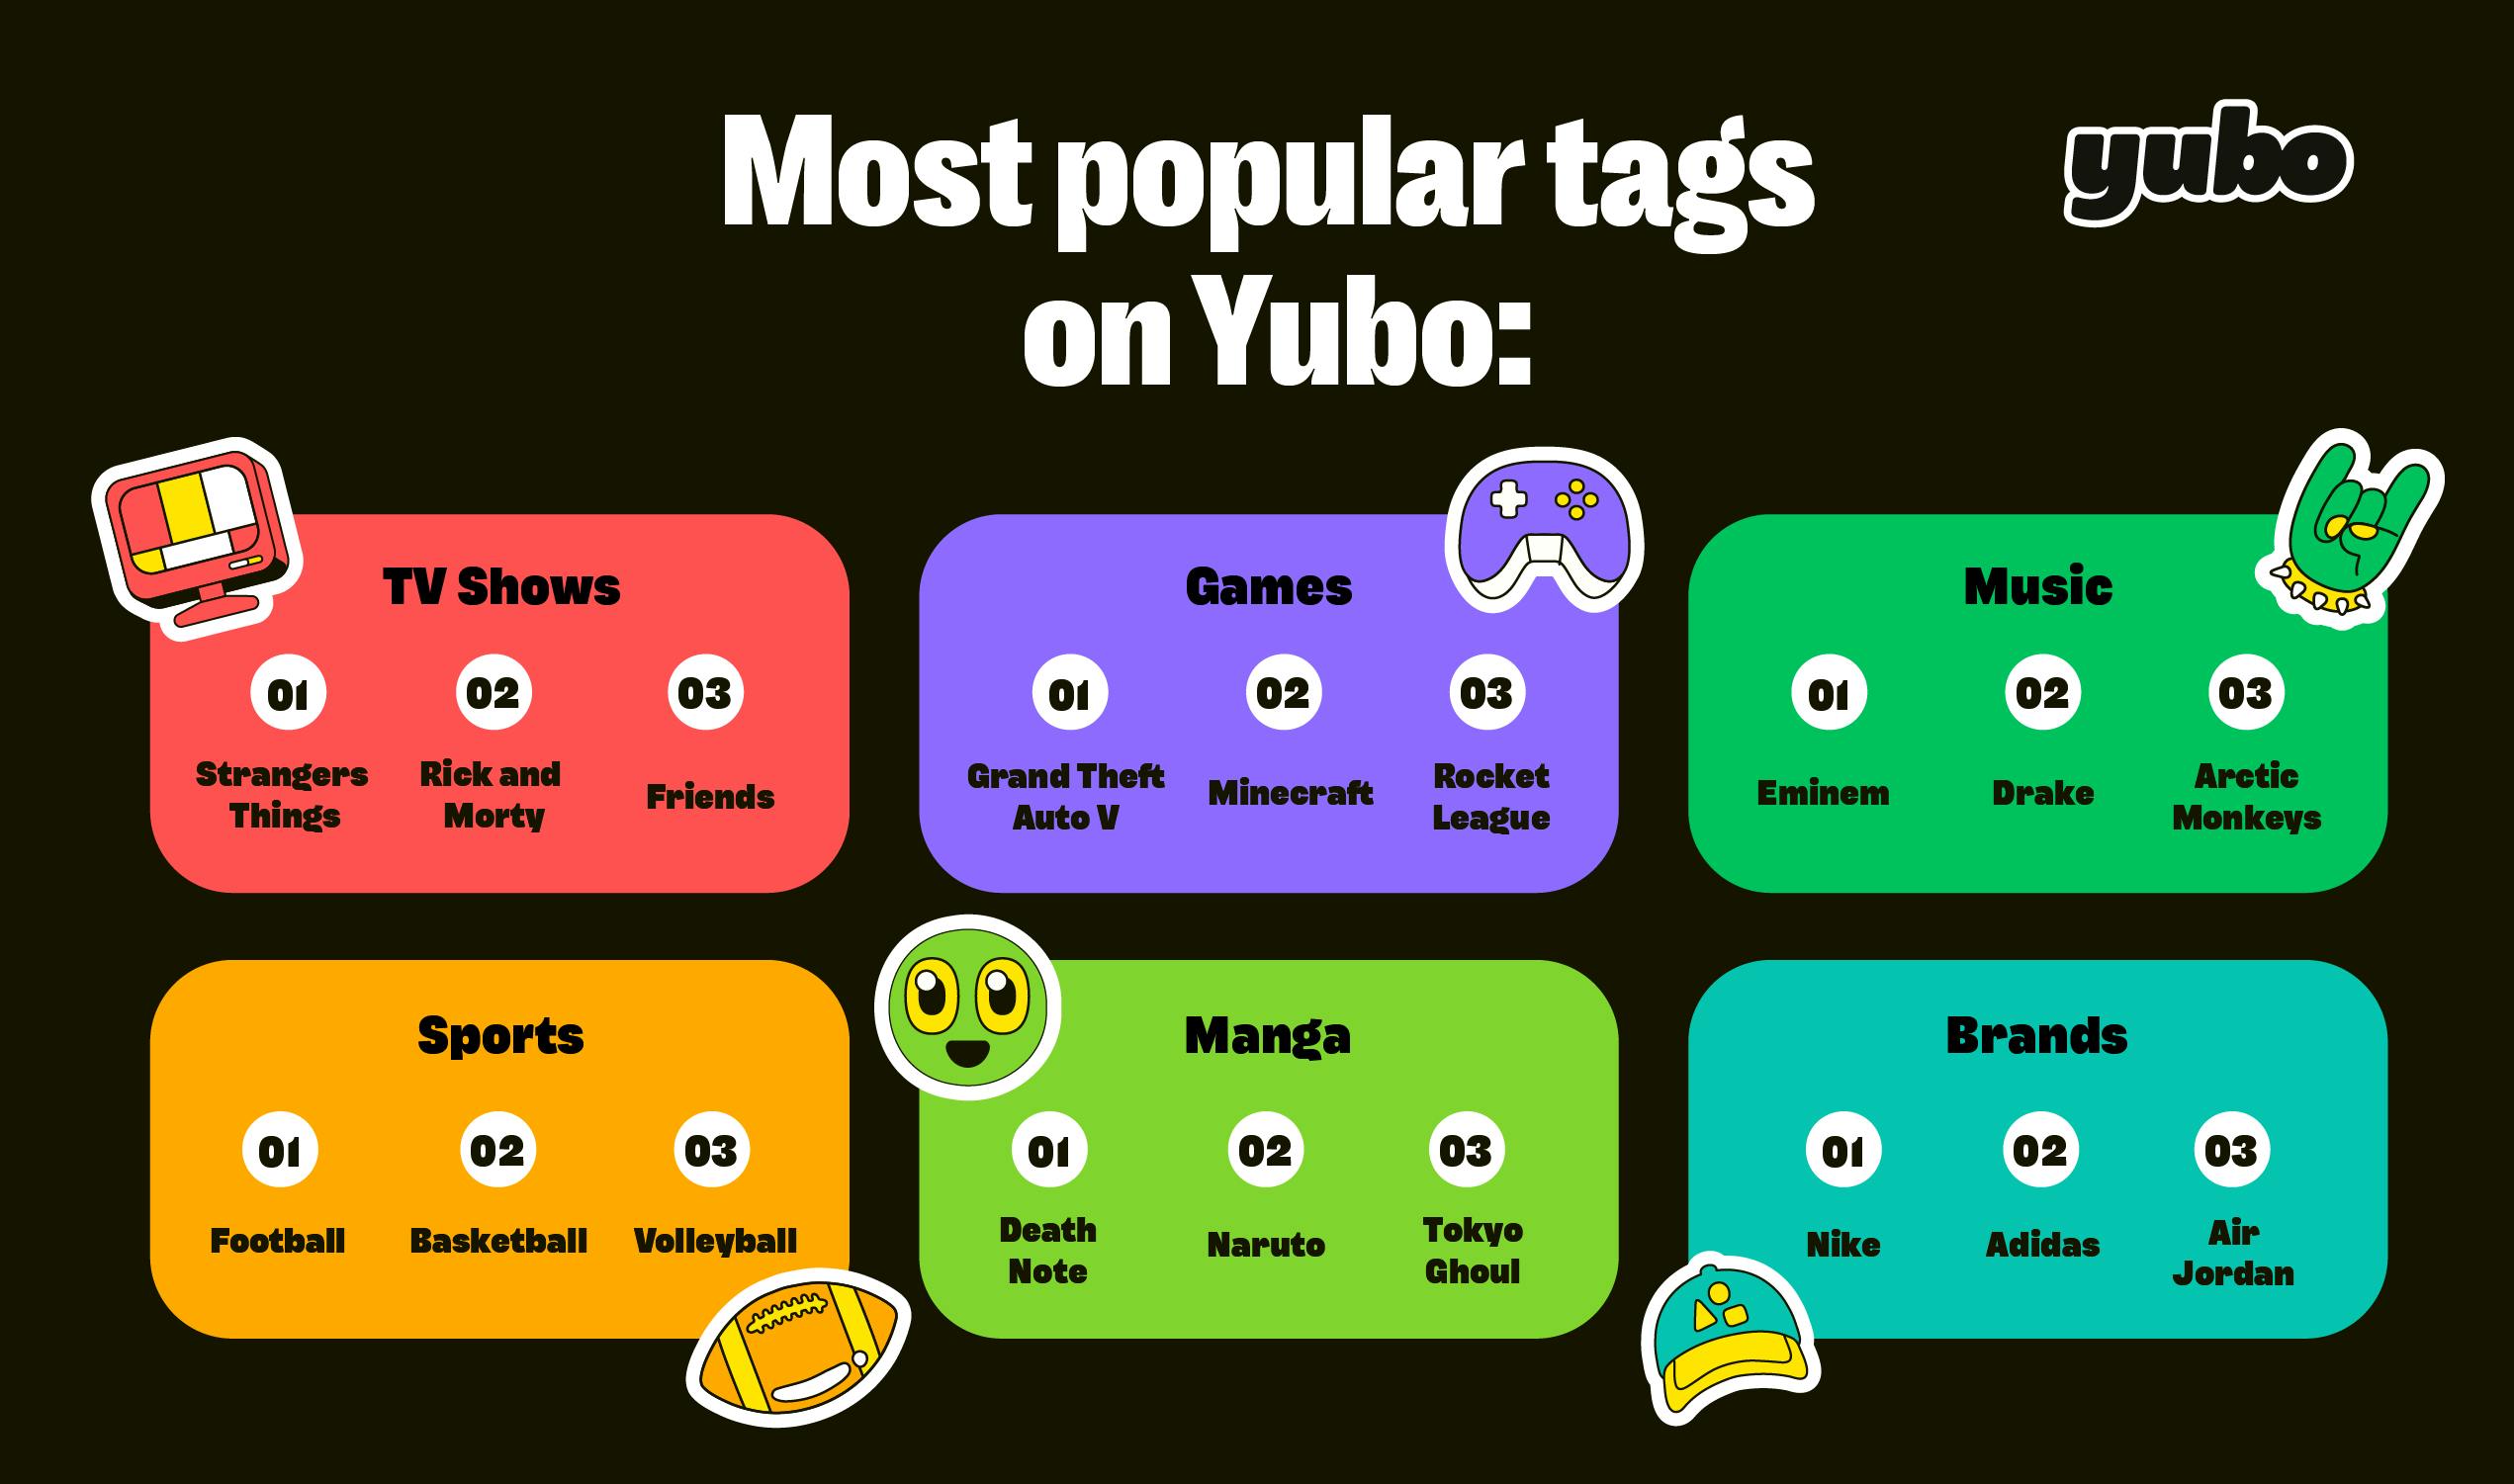 Mest populära taggar på Yubo. 6 kategorier finns: Tv-program, Spel, Musik, Sport, Manga och Varumärke